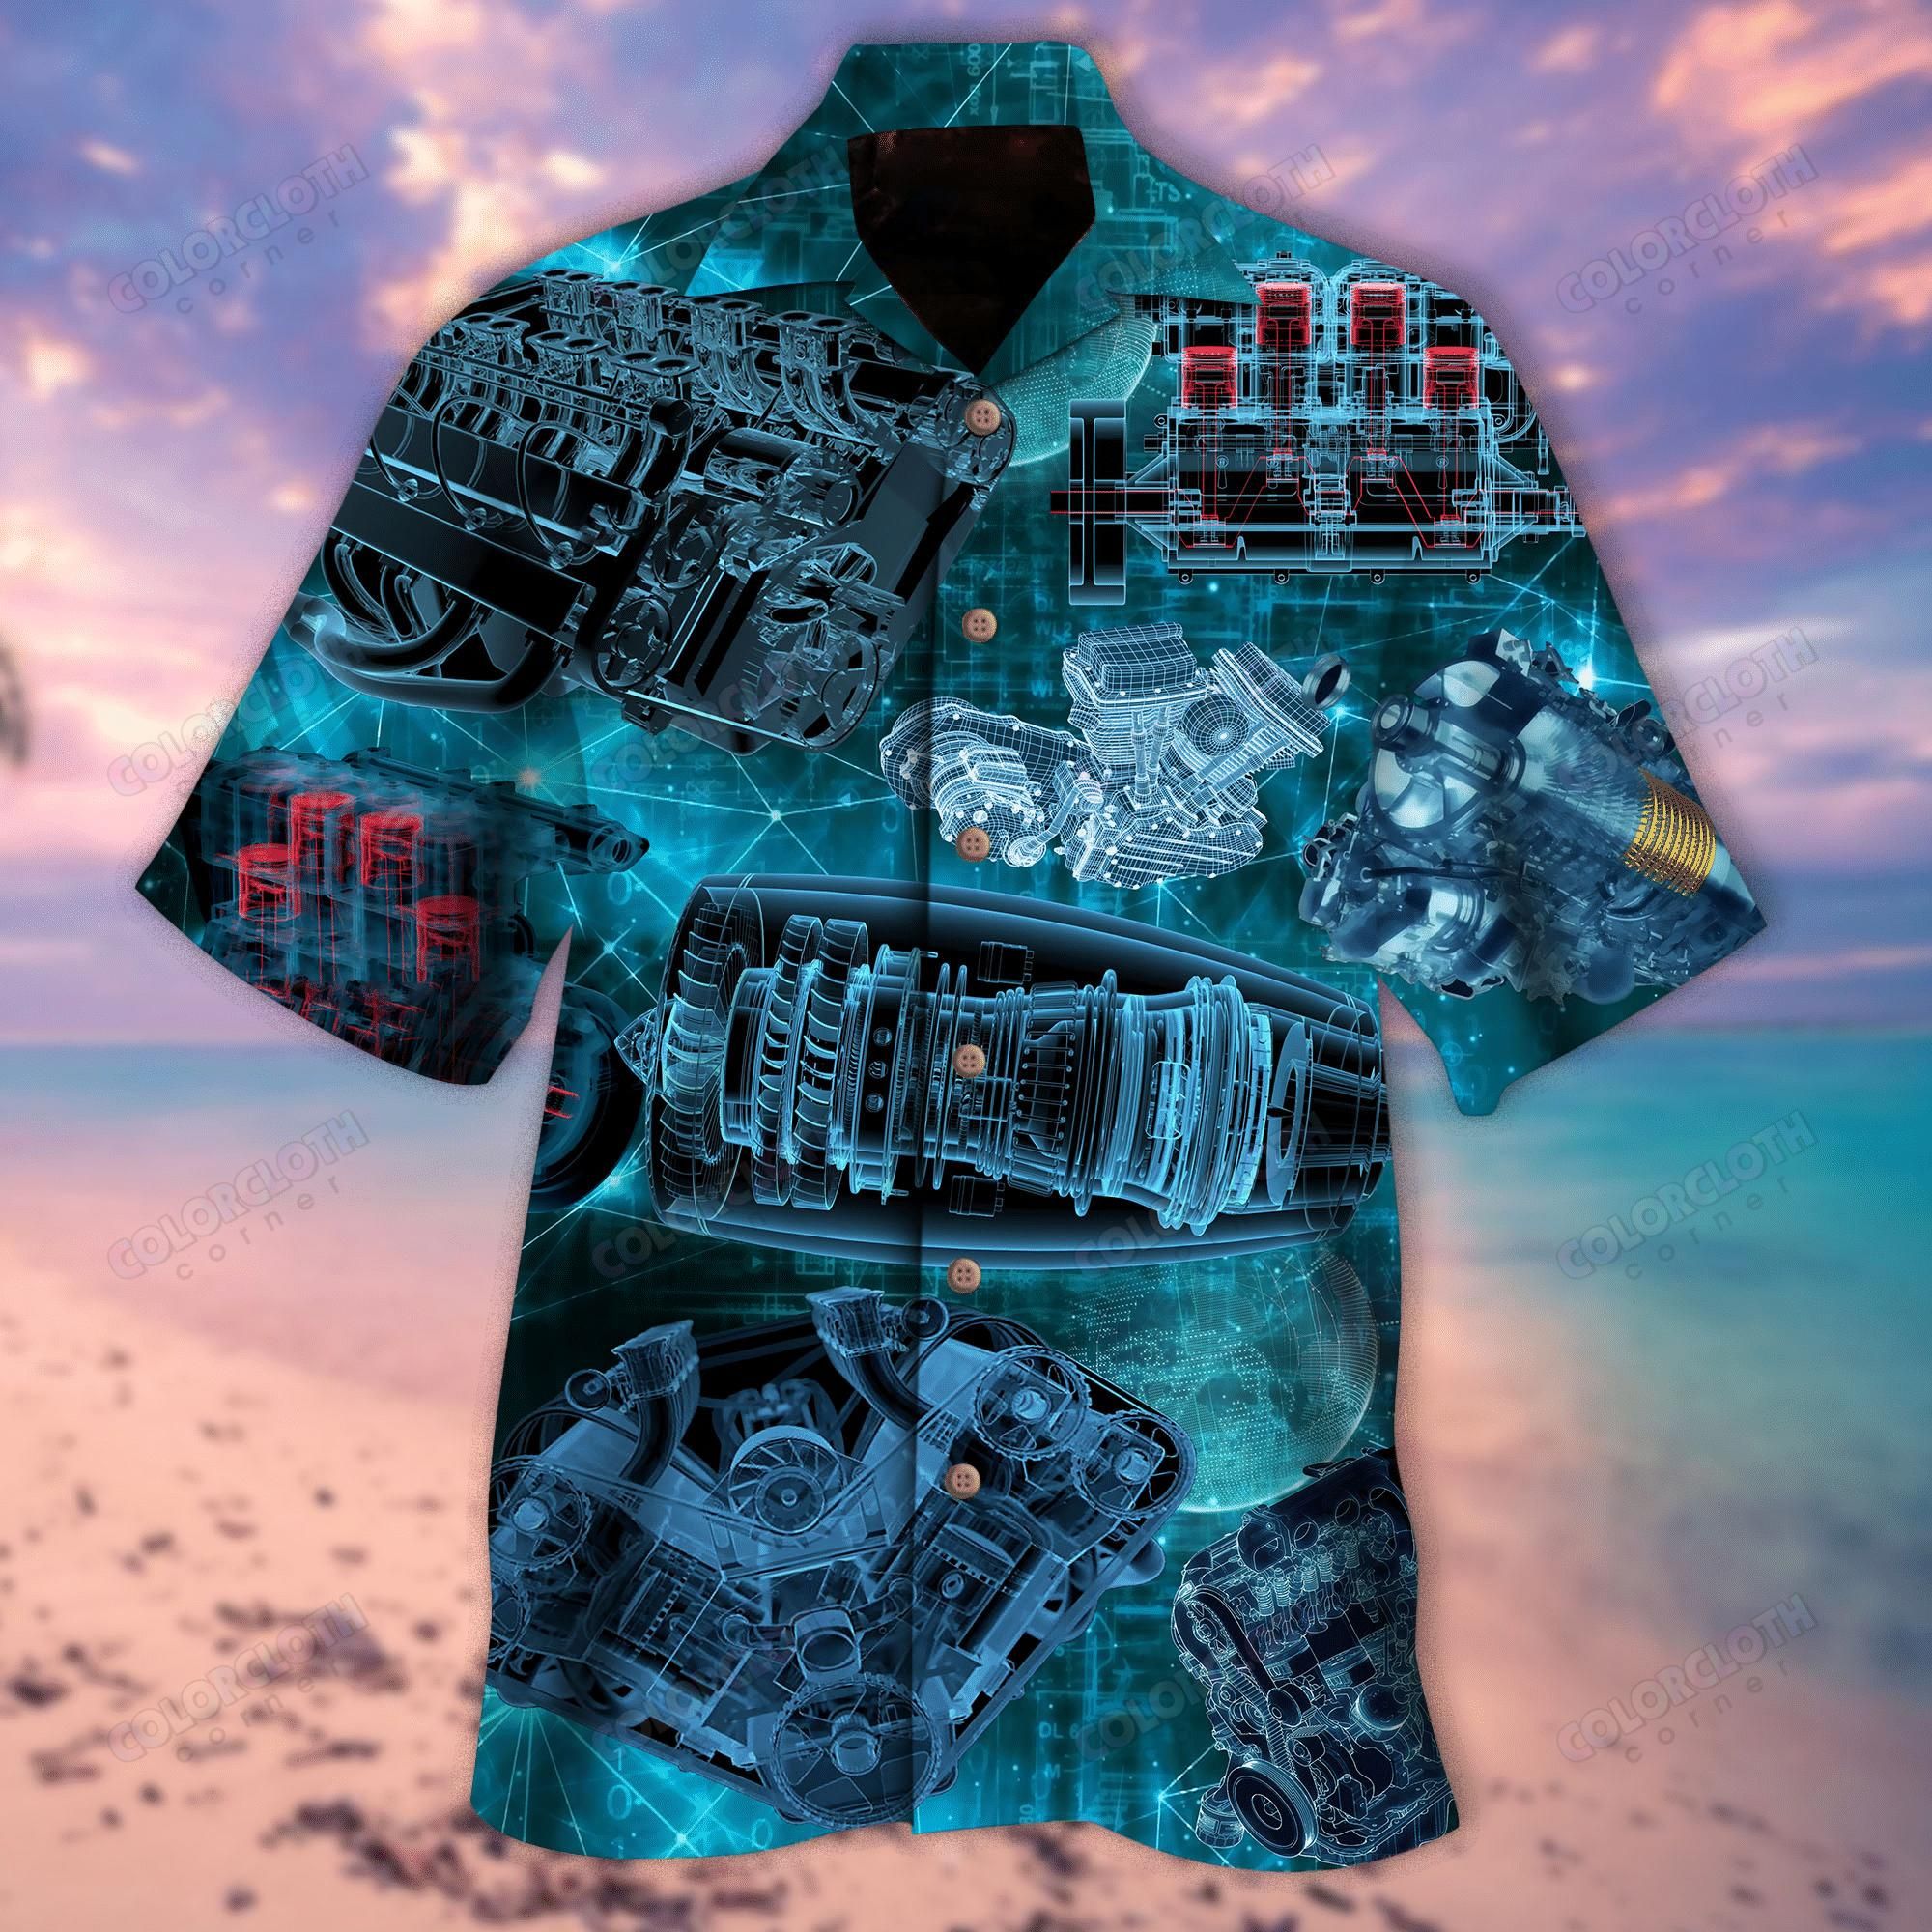 kurobase-amazing-blueprint-engines-unisex-hawaii-shirt-hawaiian-shirt.jpeg